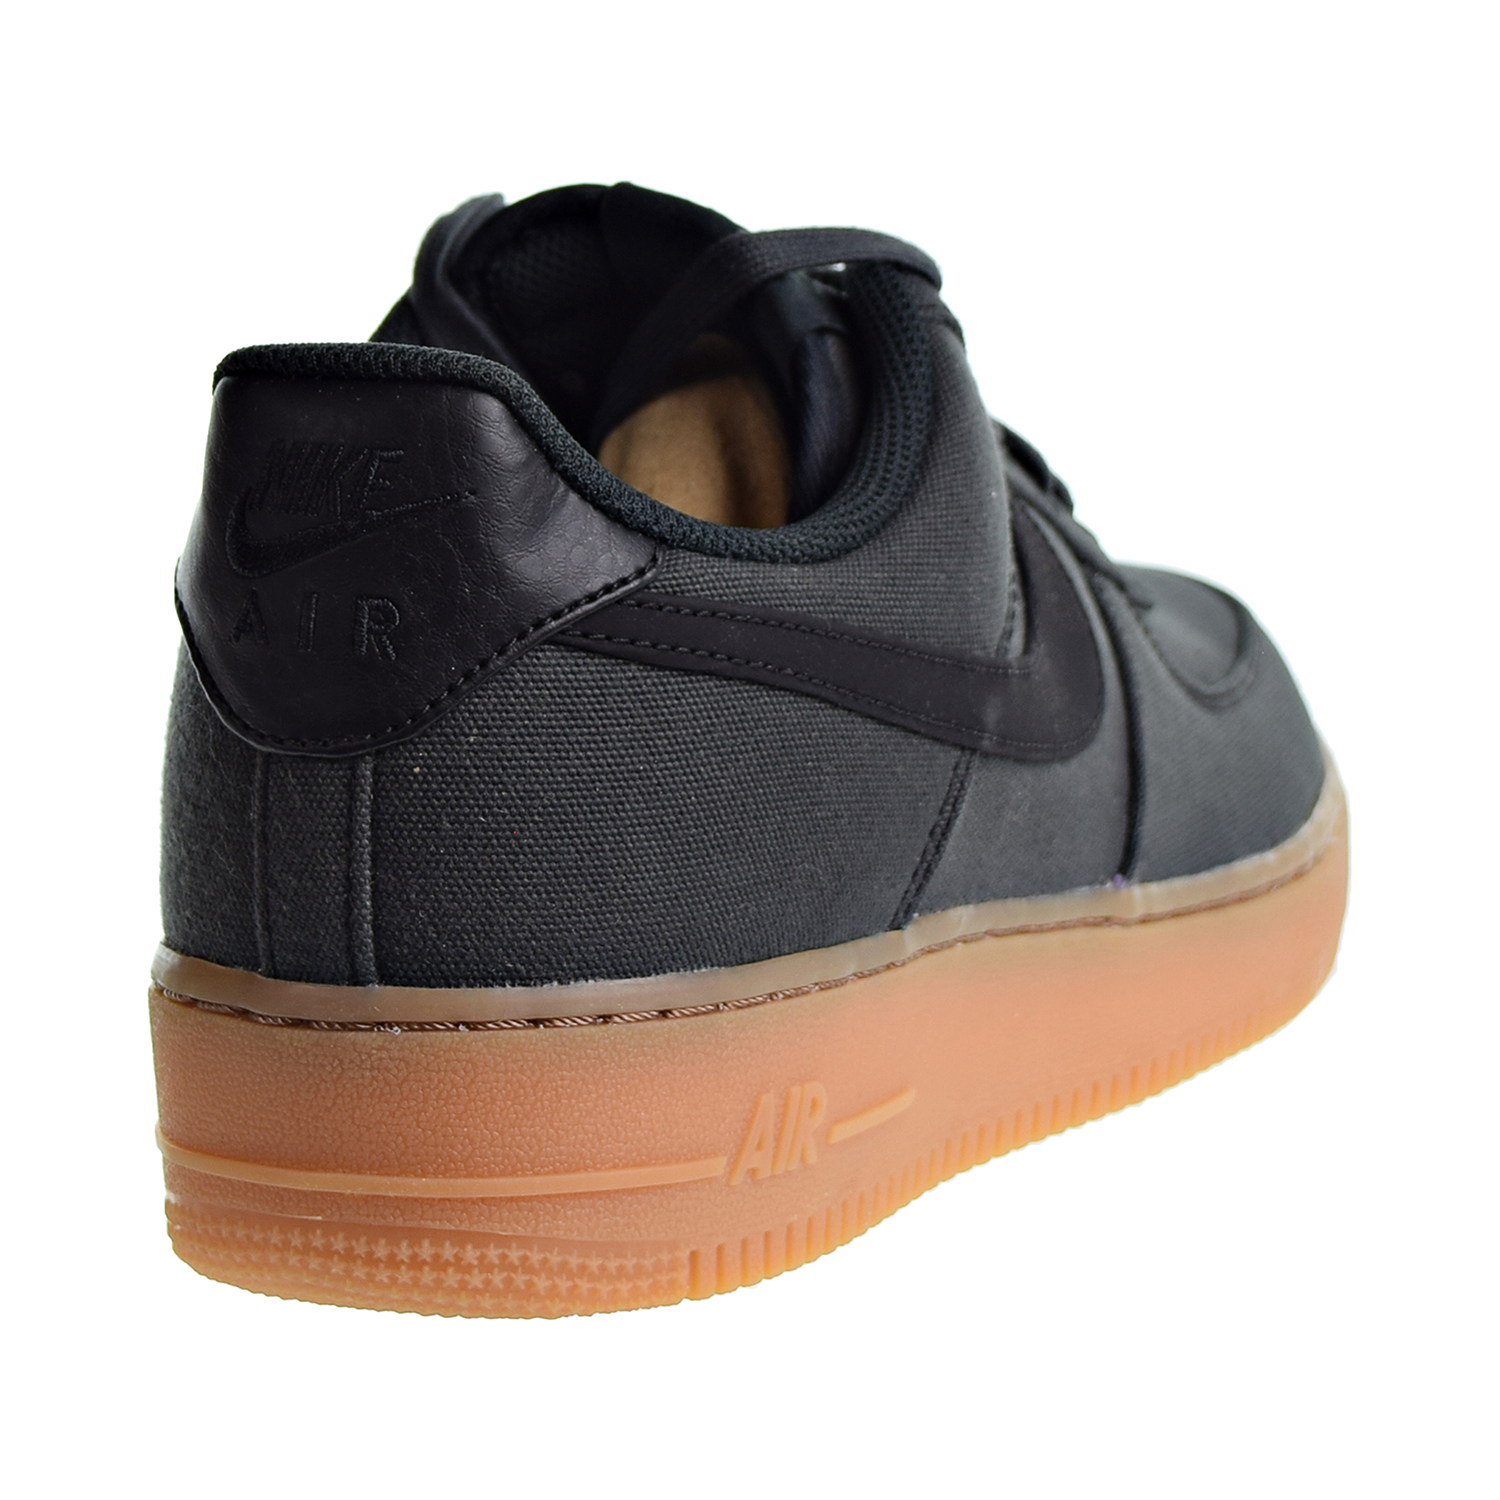 rammelaar Installeren West Nike Air Force 1 '07 LV8 Style Unisex/Men's Shoes Black/Black/Gum-Brown  aq0117-002